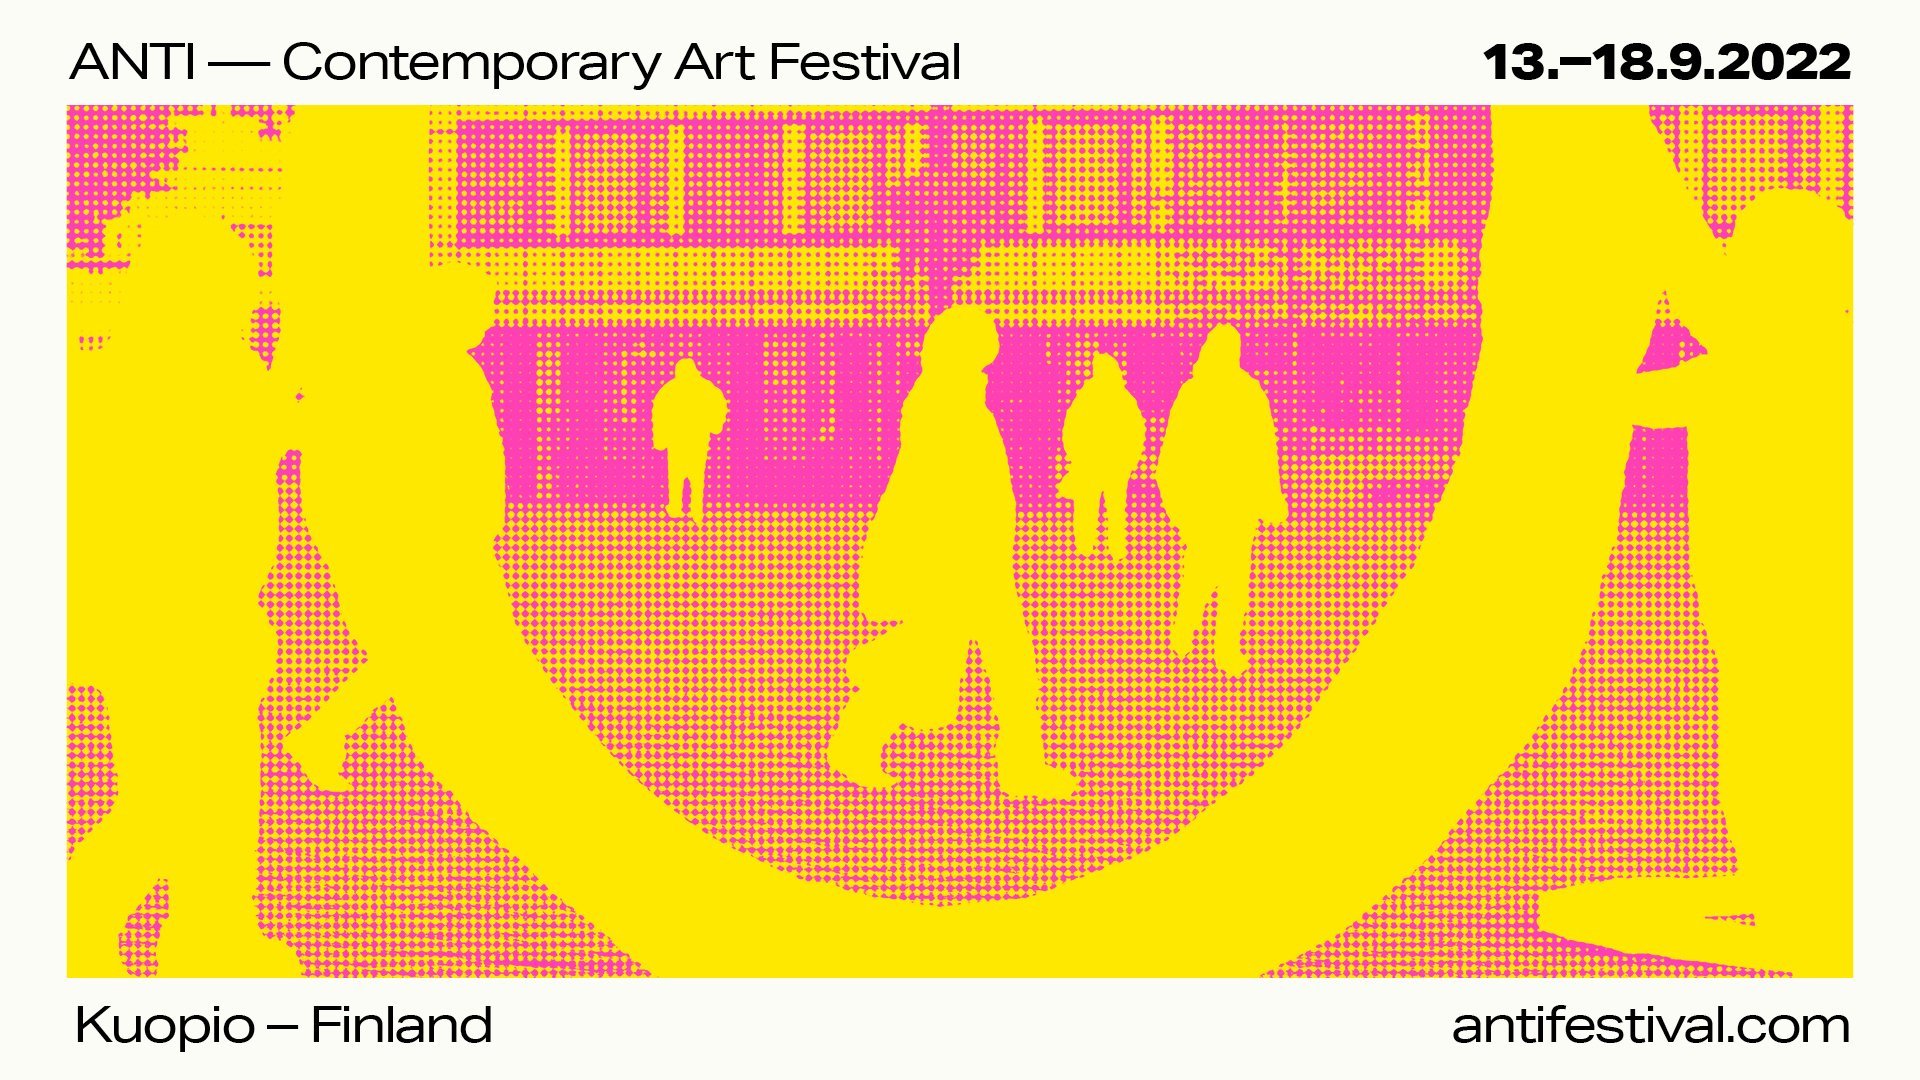 ANTI - Contemporary Art Festival 2022